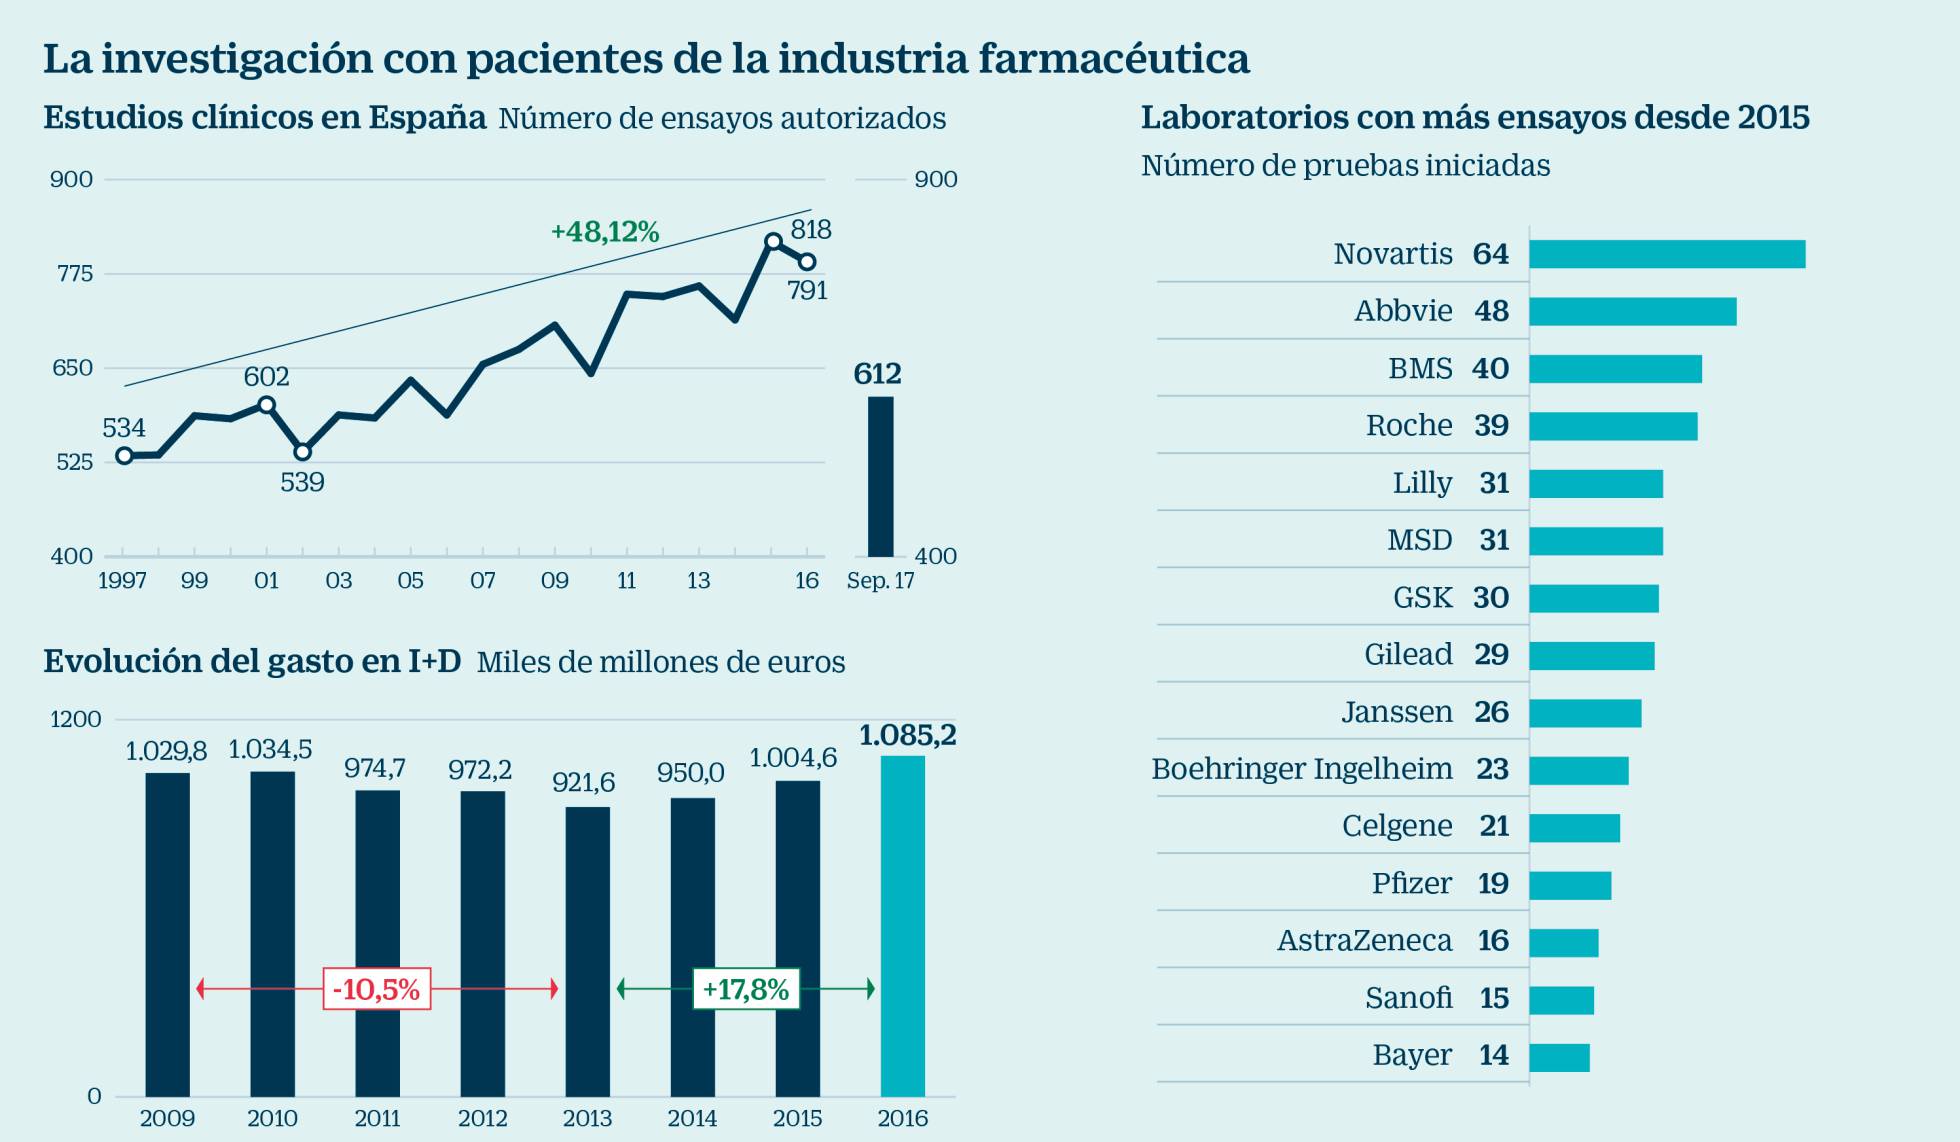 LA INDUSTRIA FARMACÉUTICA CONVIERTE A ESPAÑA EN UNA POTENCIA EN ENSAYOS CLÍNICOS